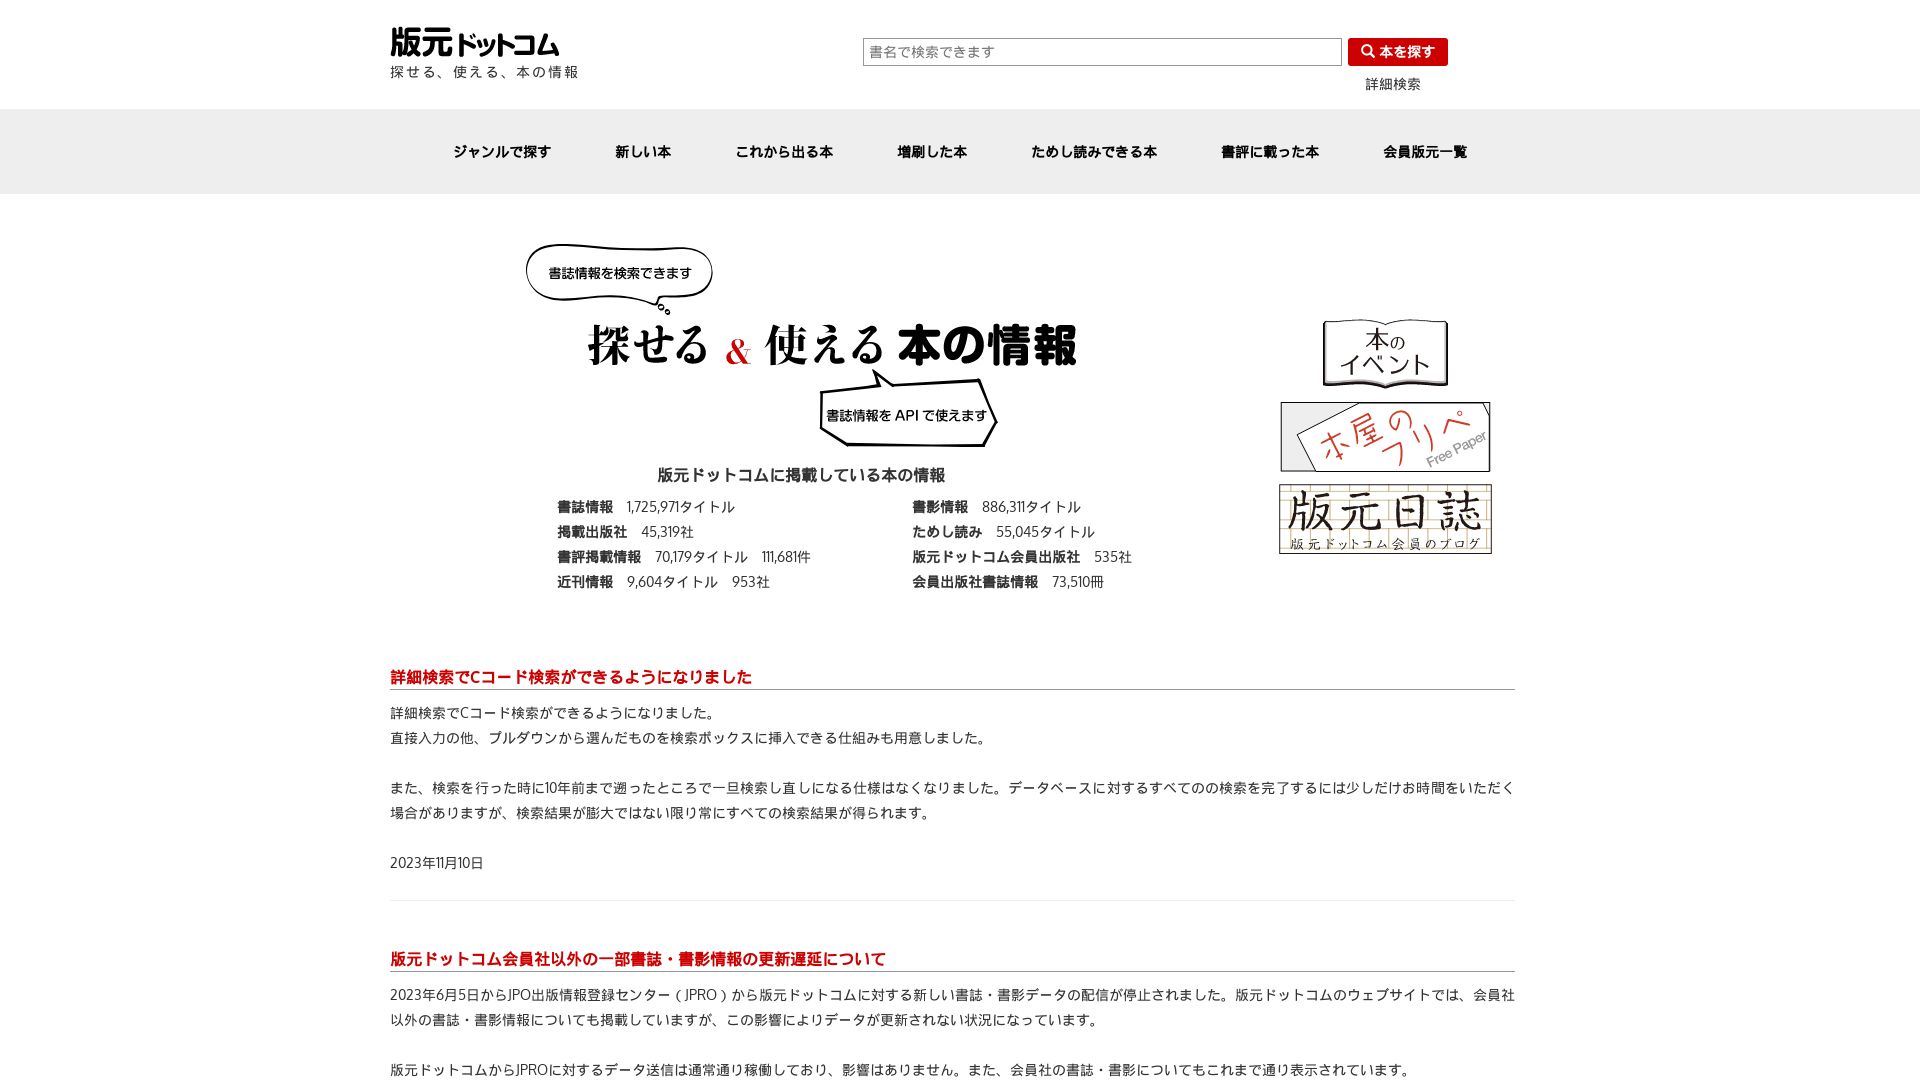 Stato del sito web hanmoto.com è   ONLINE